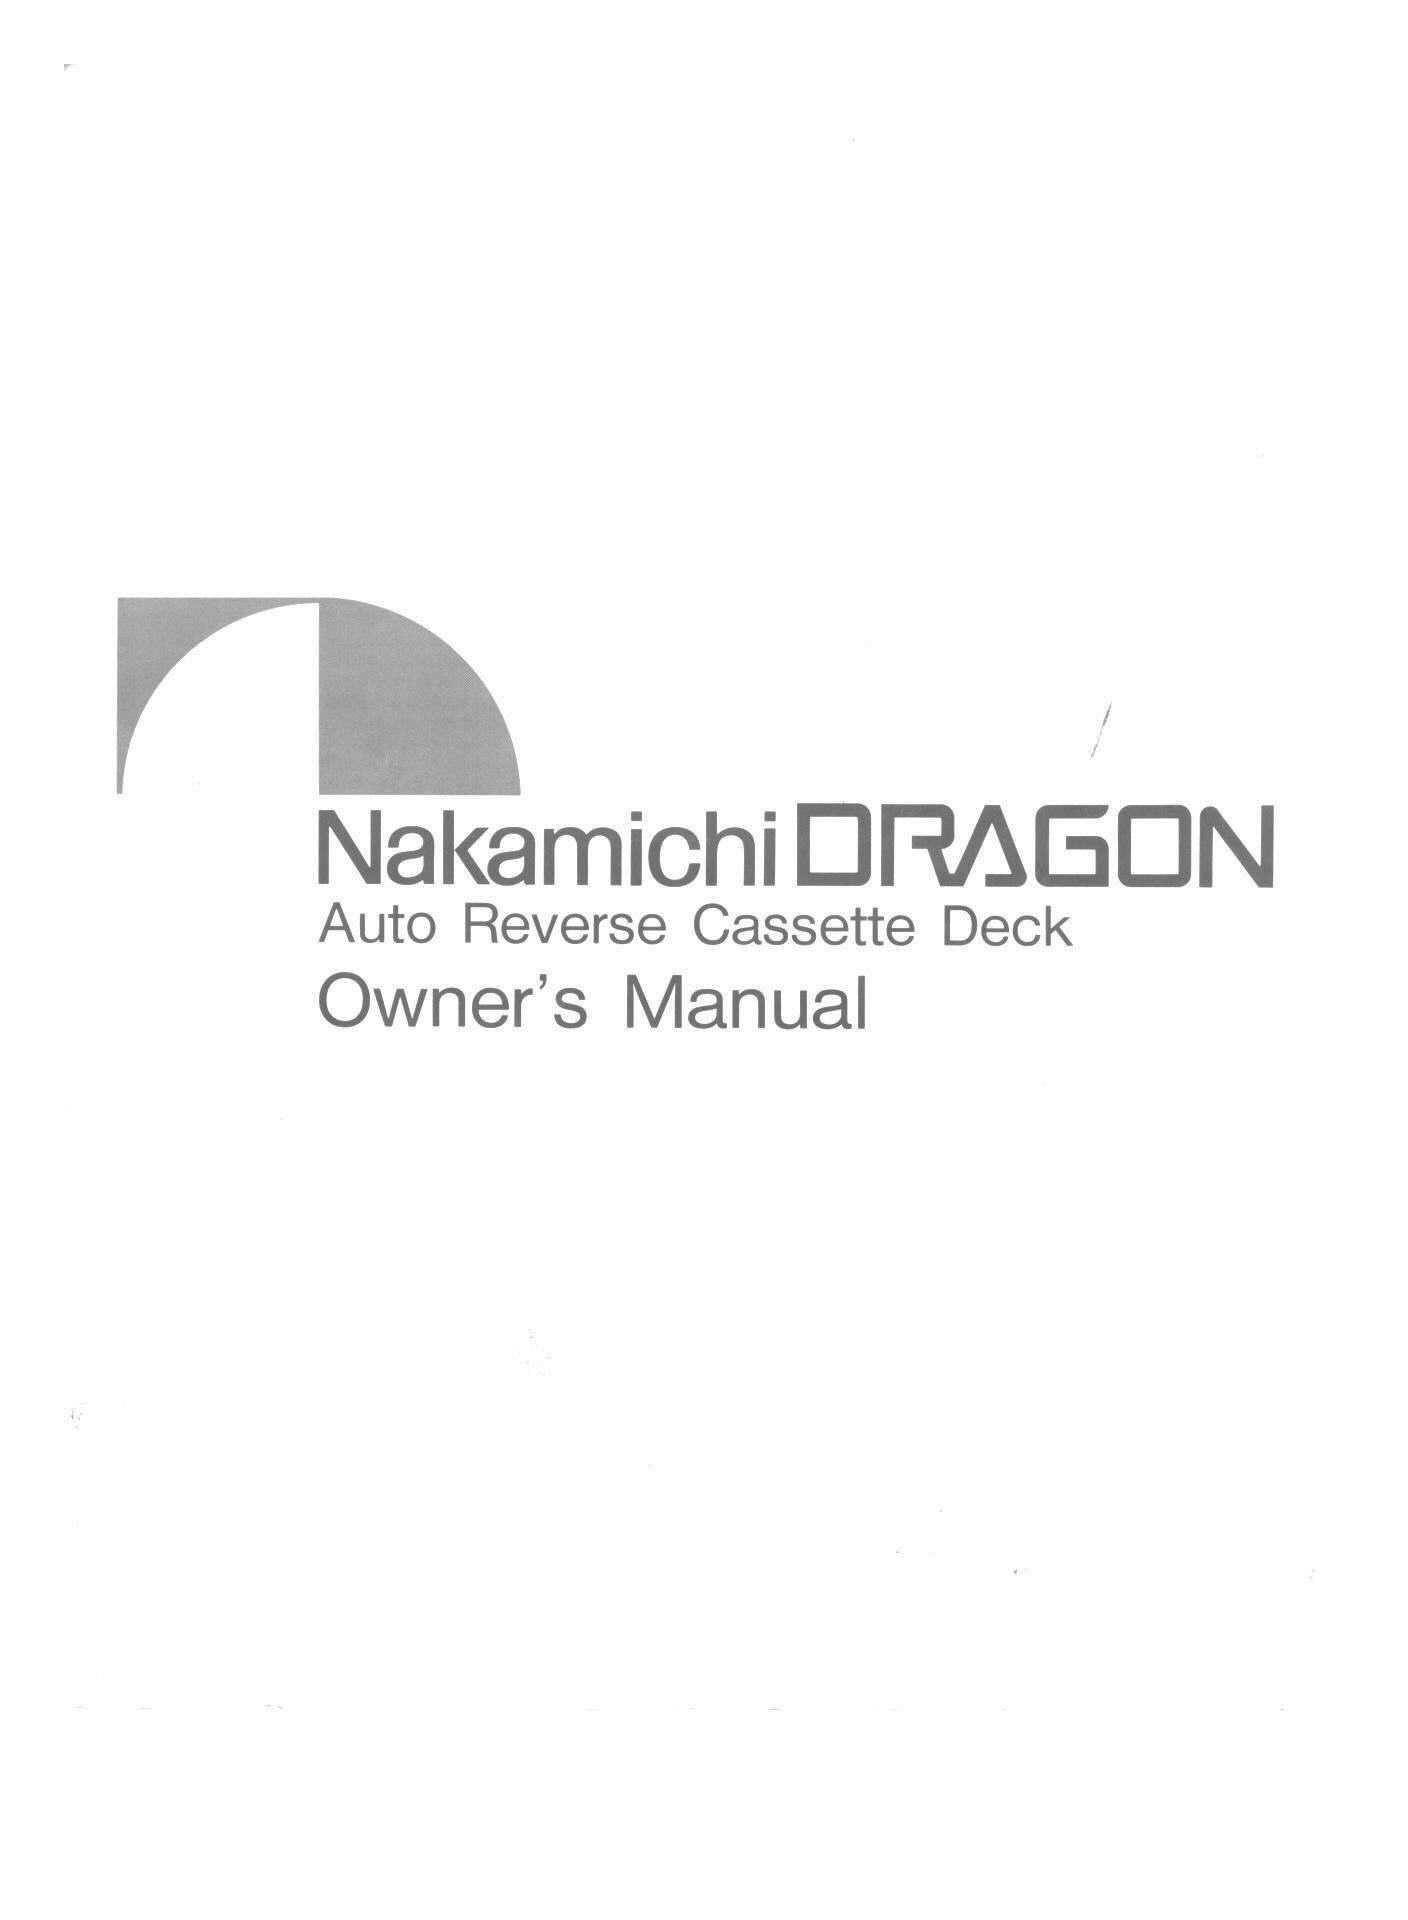 Nakamichi DRAGON User Manual